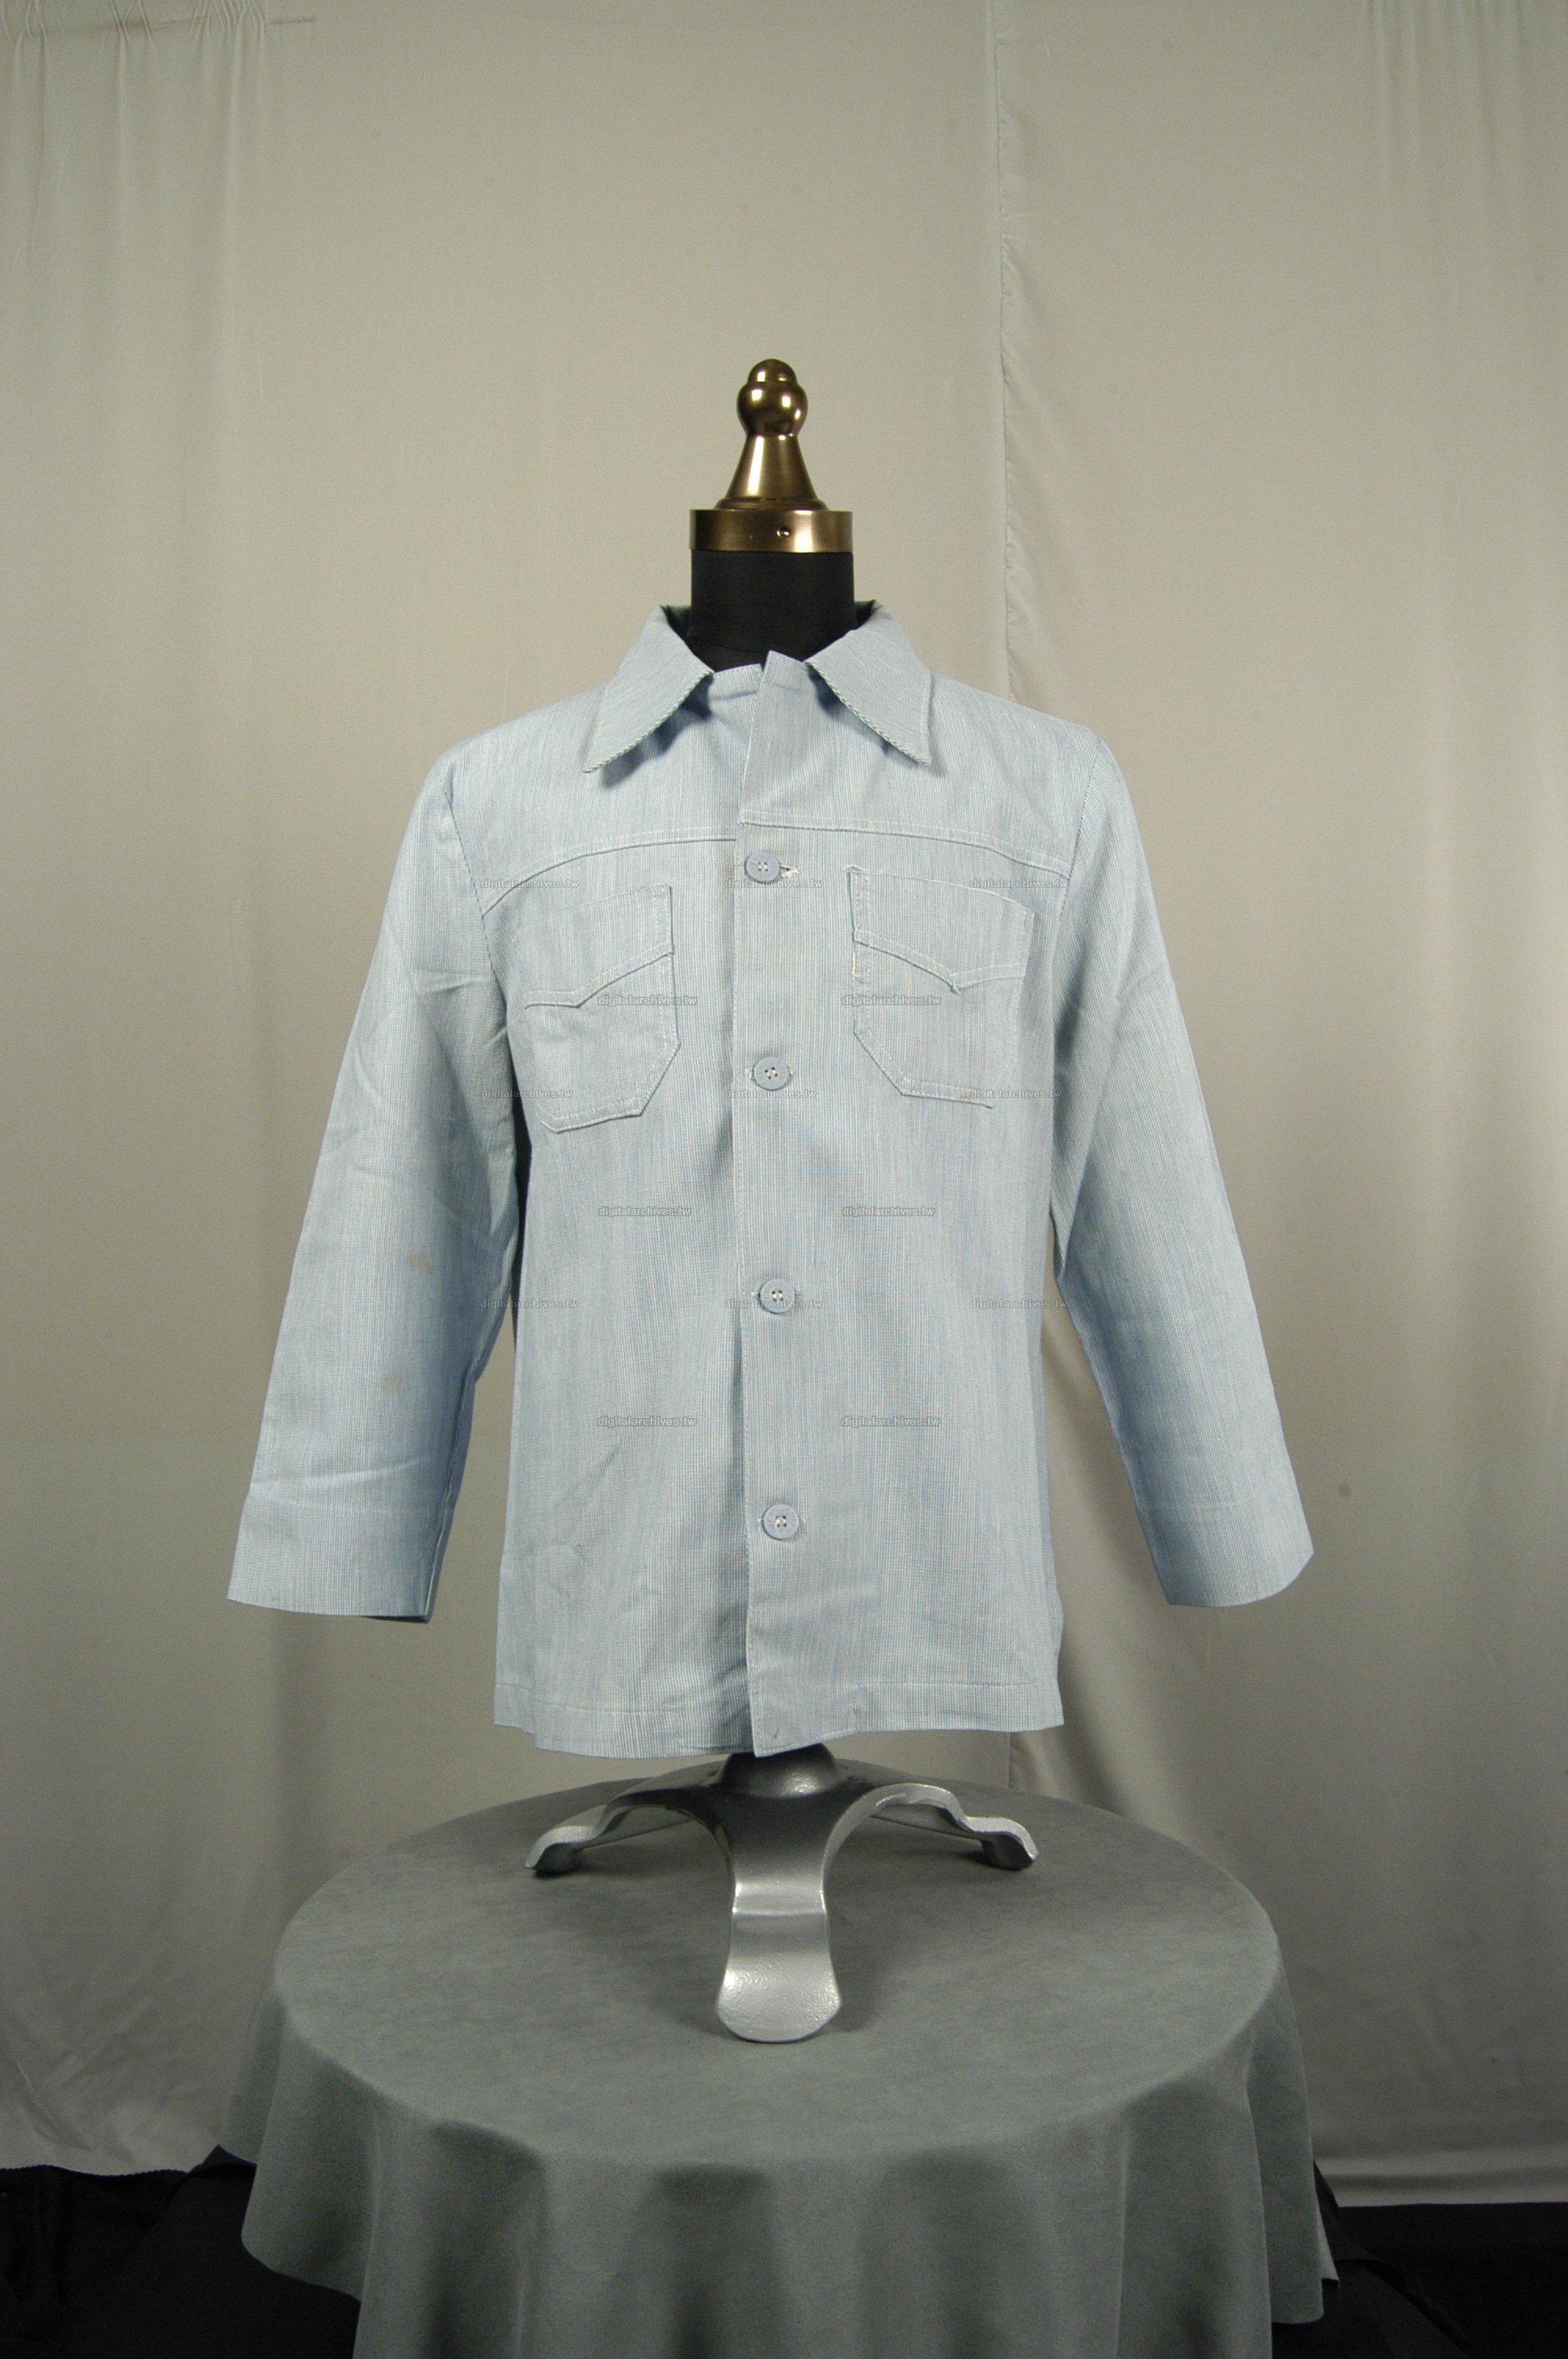 藏品名稱:淺藍長袖混紡襯衫(入藏登錄號005000000035C)件名:淺藍長袖混紡襯衫